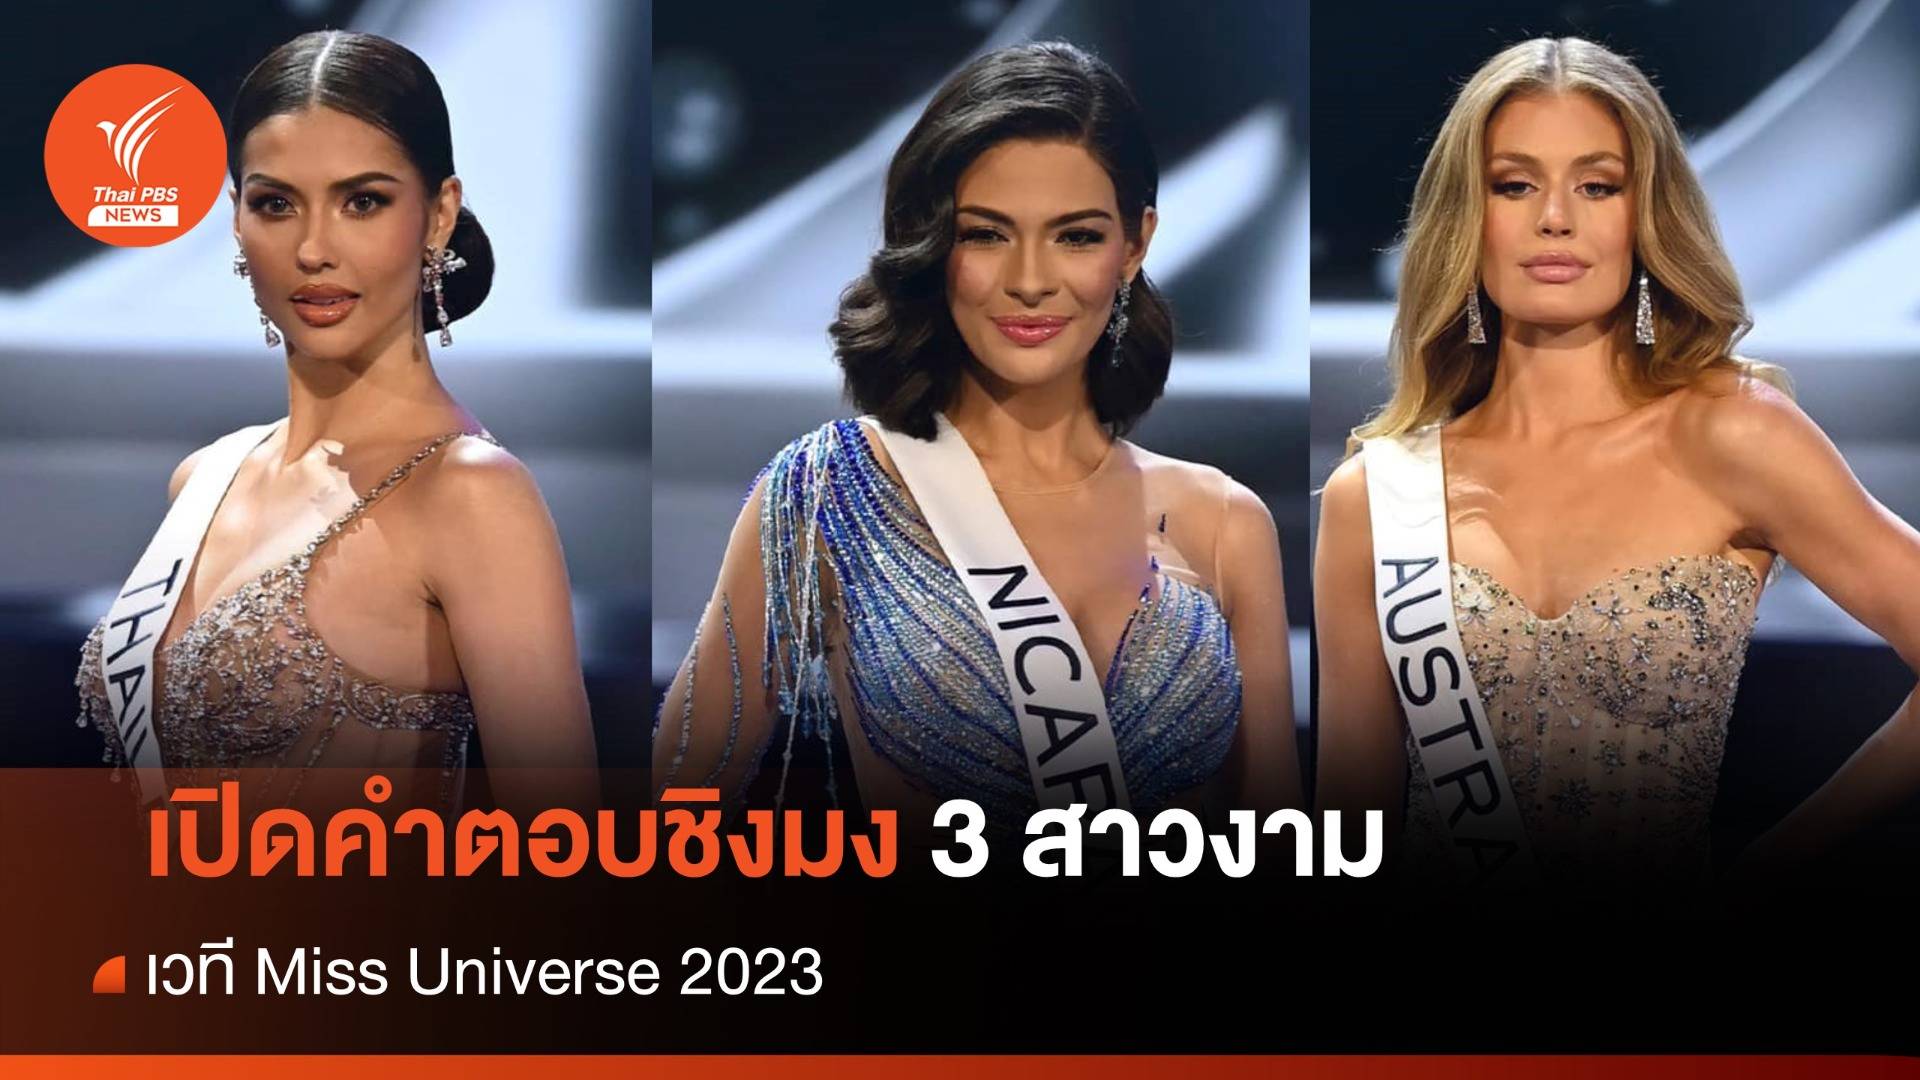 เปิดคำตอบชิงมง 3 สาวงาม เวที Miss Universe 2023